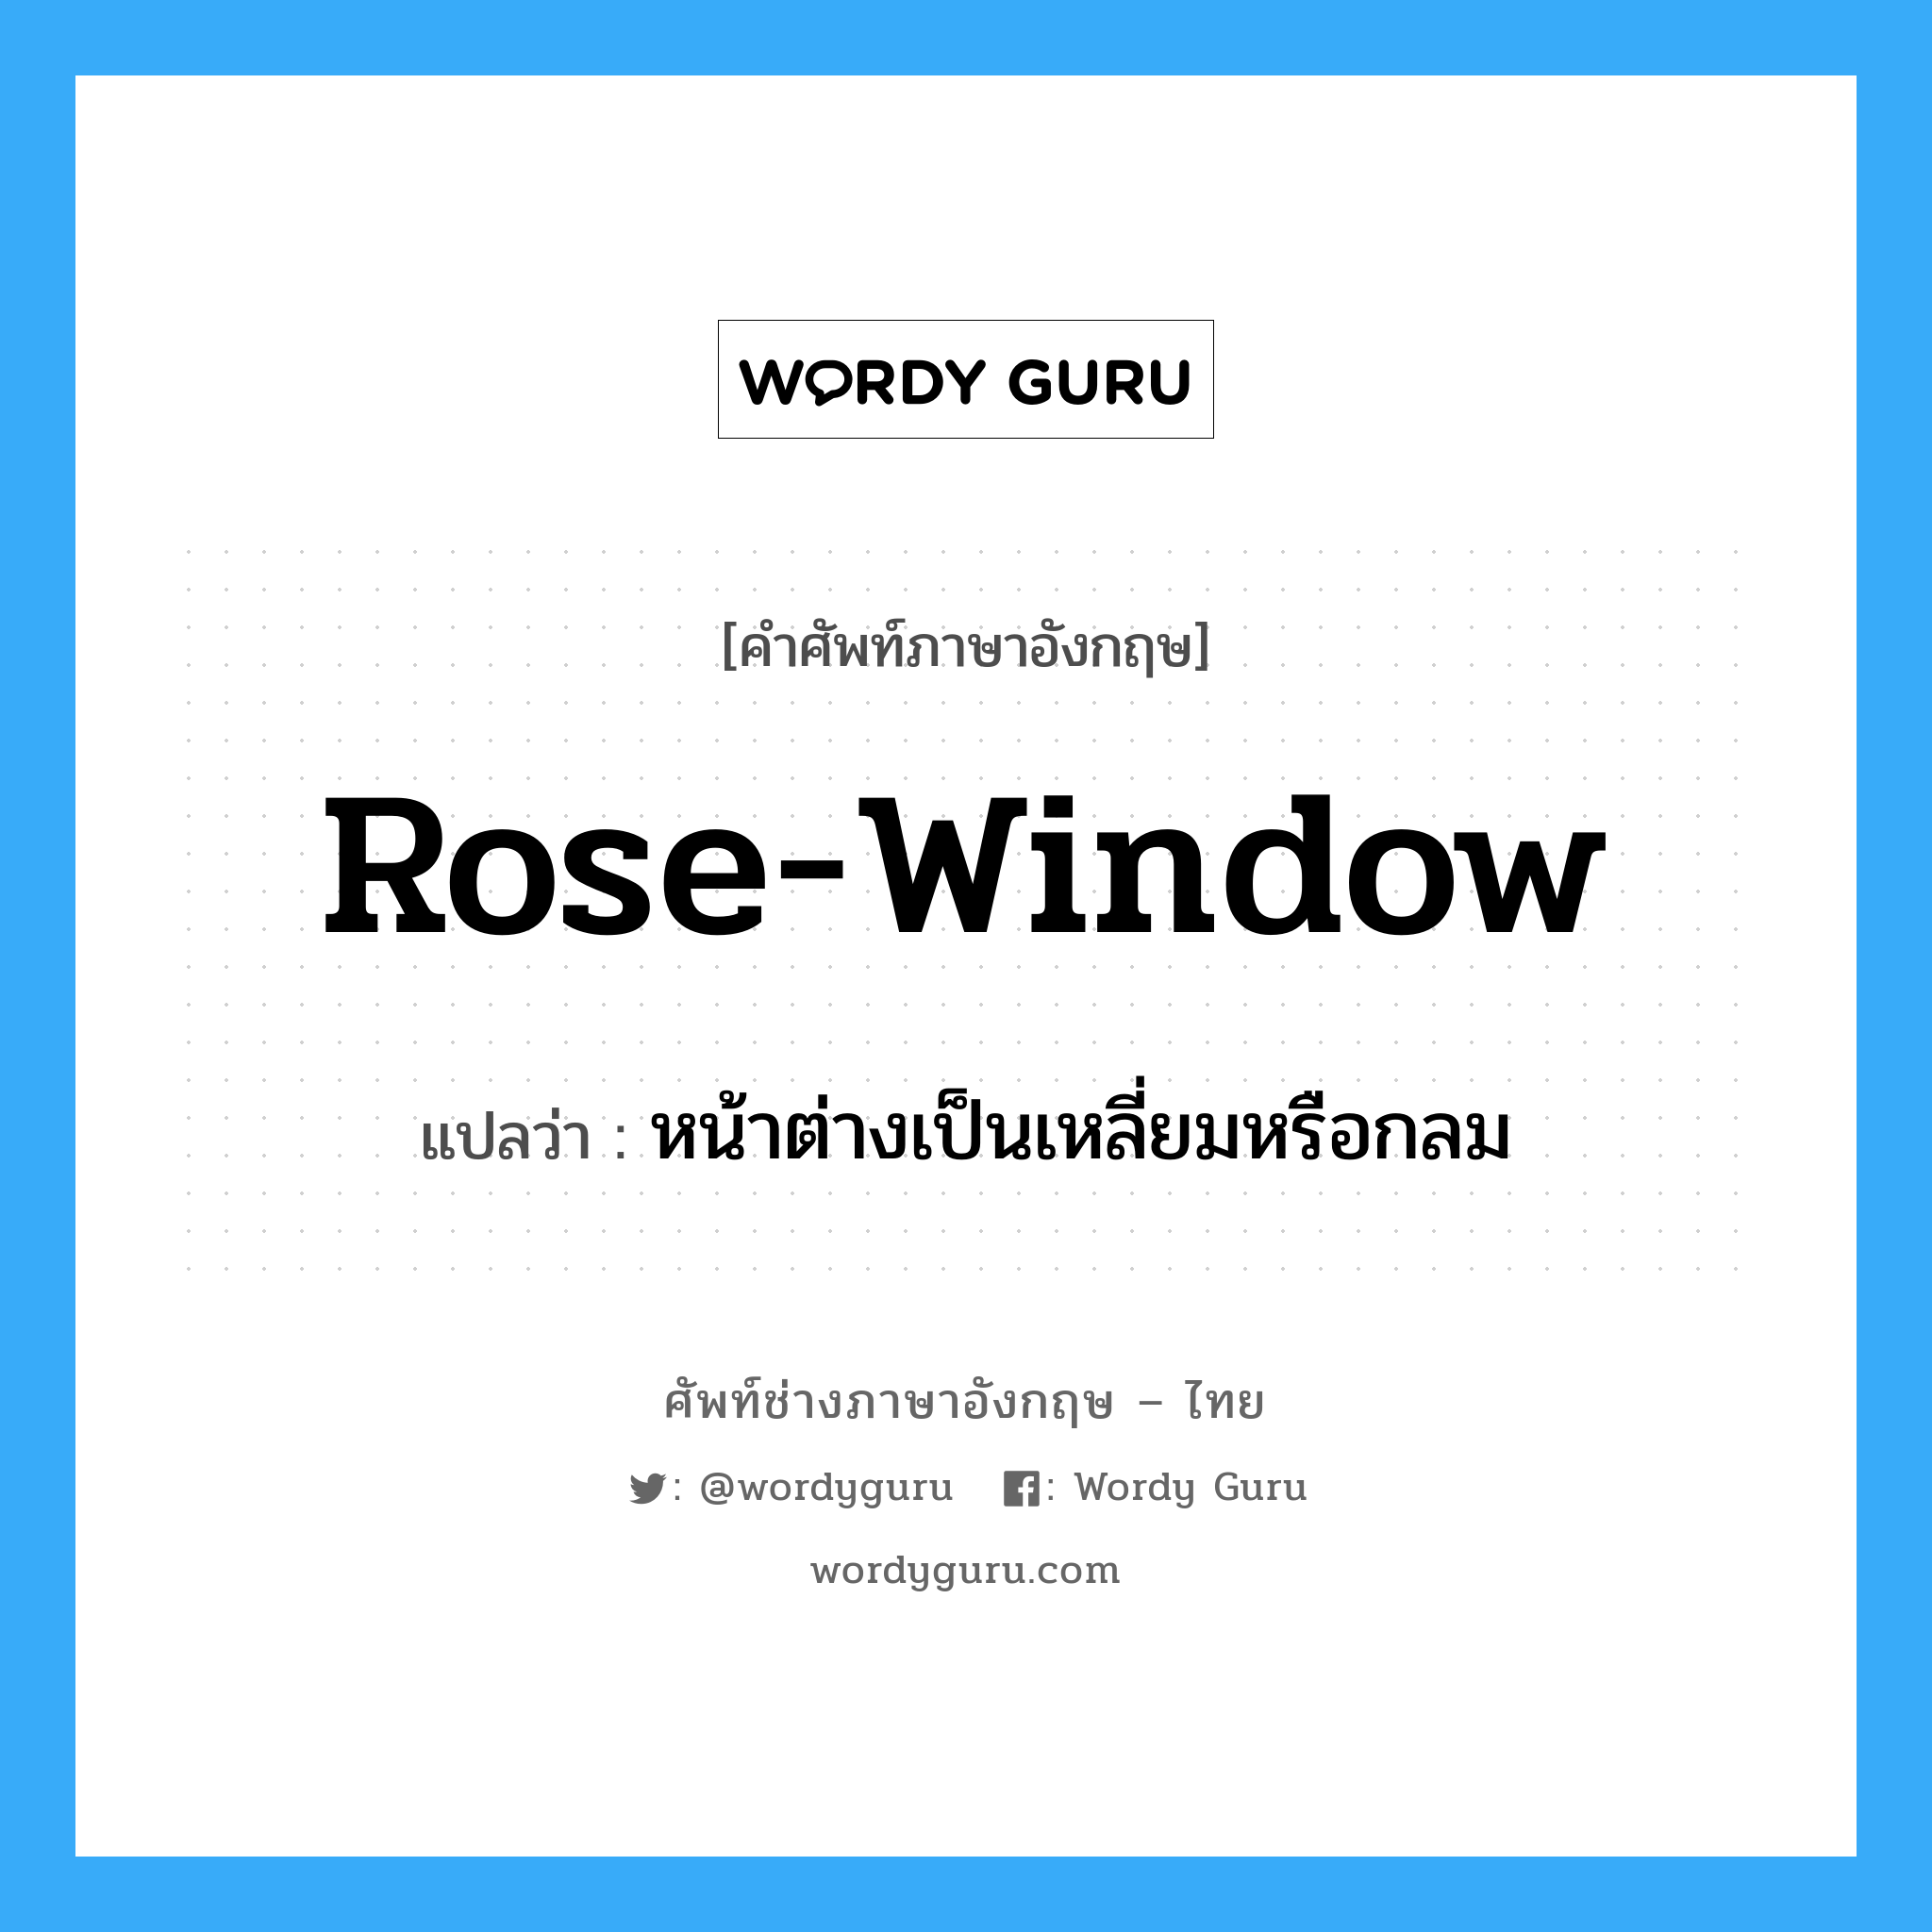 rose window แปลว่า?, คำศัพท์ช่างภาษาอังกฤษ - ไทย rose-window คำศัพท์ภาษาอังกฤษ rose-window แปลว่า หน้าต่างเป็นเหลี่ยมหรือกลม